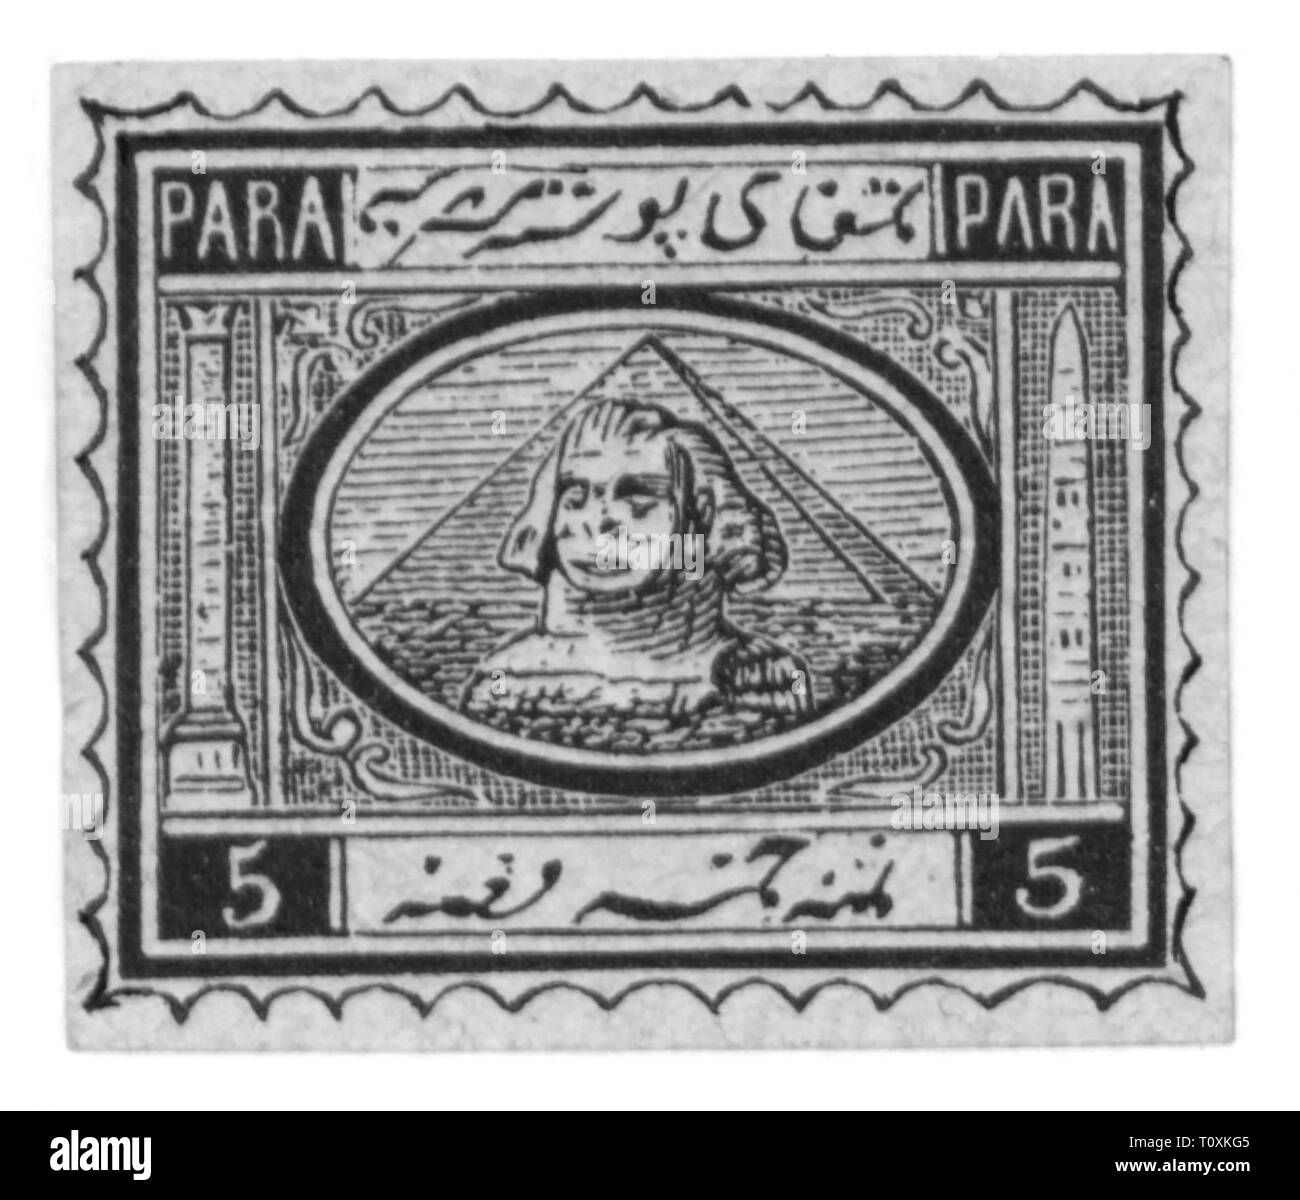 Mail, Briefmarken, Ägypten, 20 Para Briefmarke, Sphinx und Pyramiden, 1867 - 1872, Additional-Rights - Clearance-Info - Not-Available Stockfoto